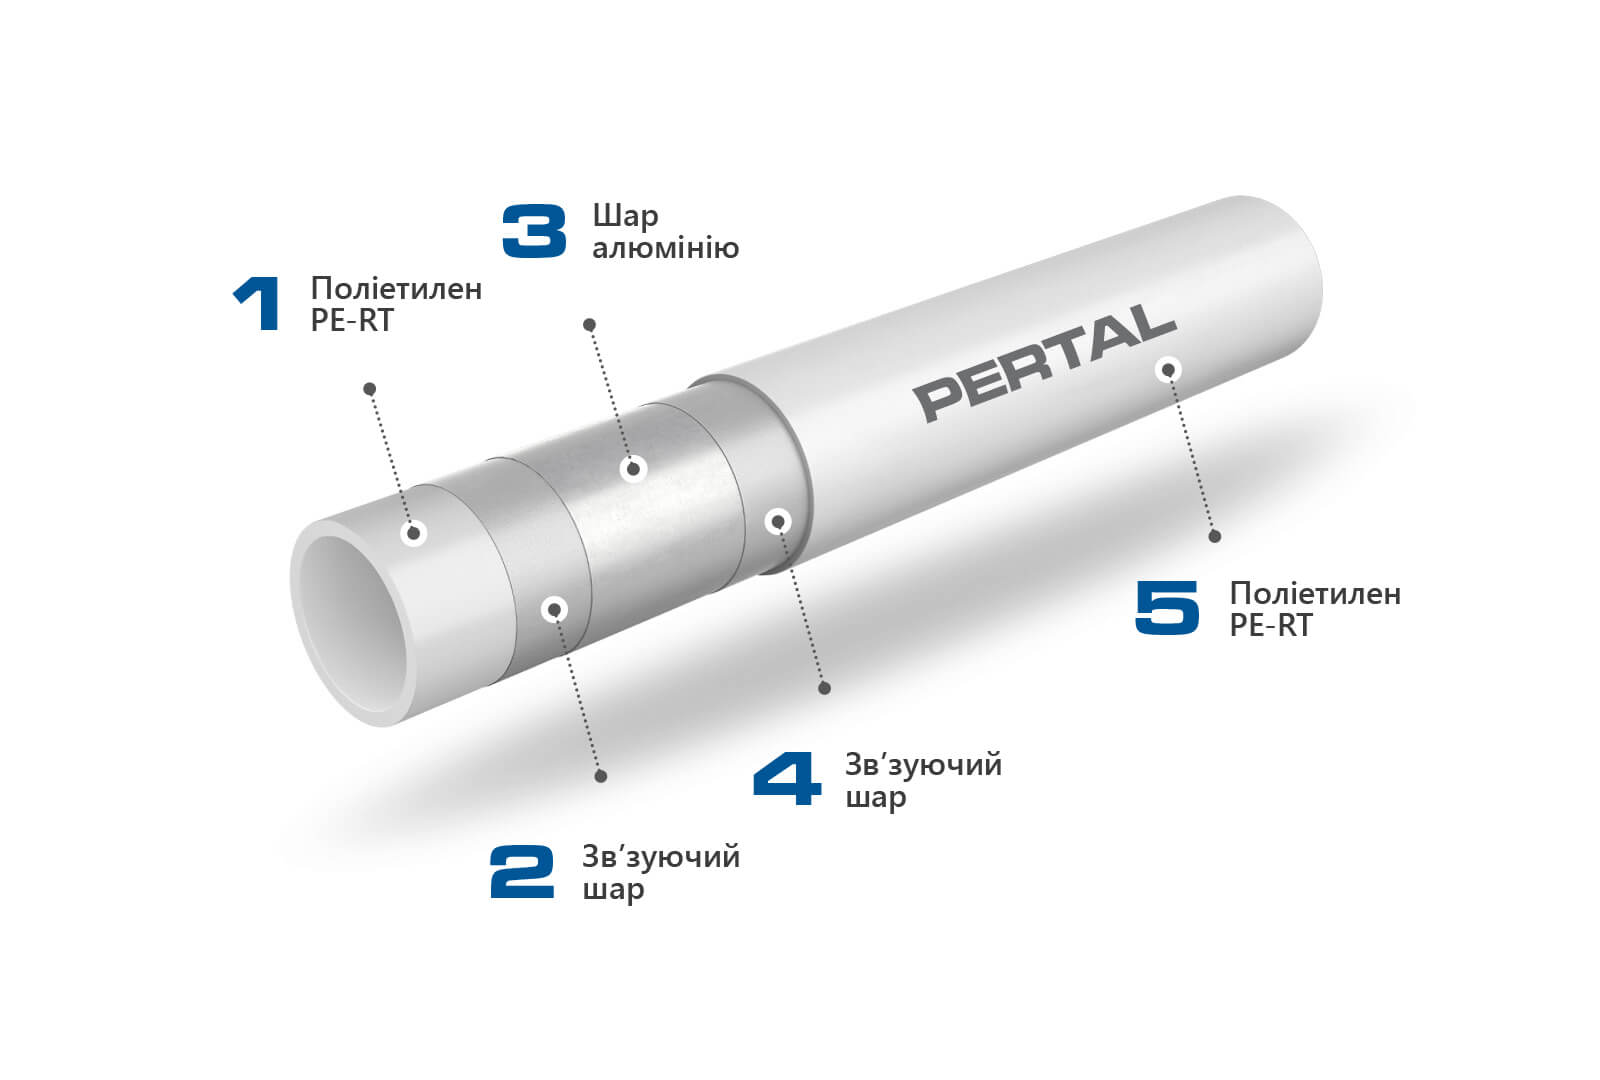 KAN-therm - система ultraPRESS - 3D модель з описом труби PERTAl